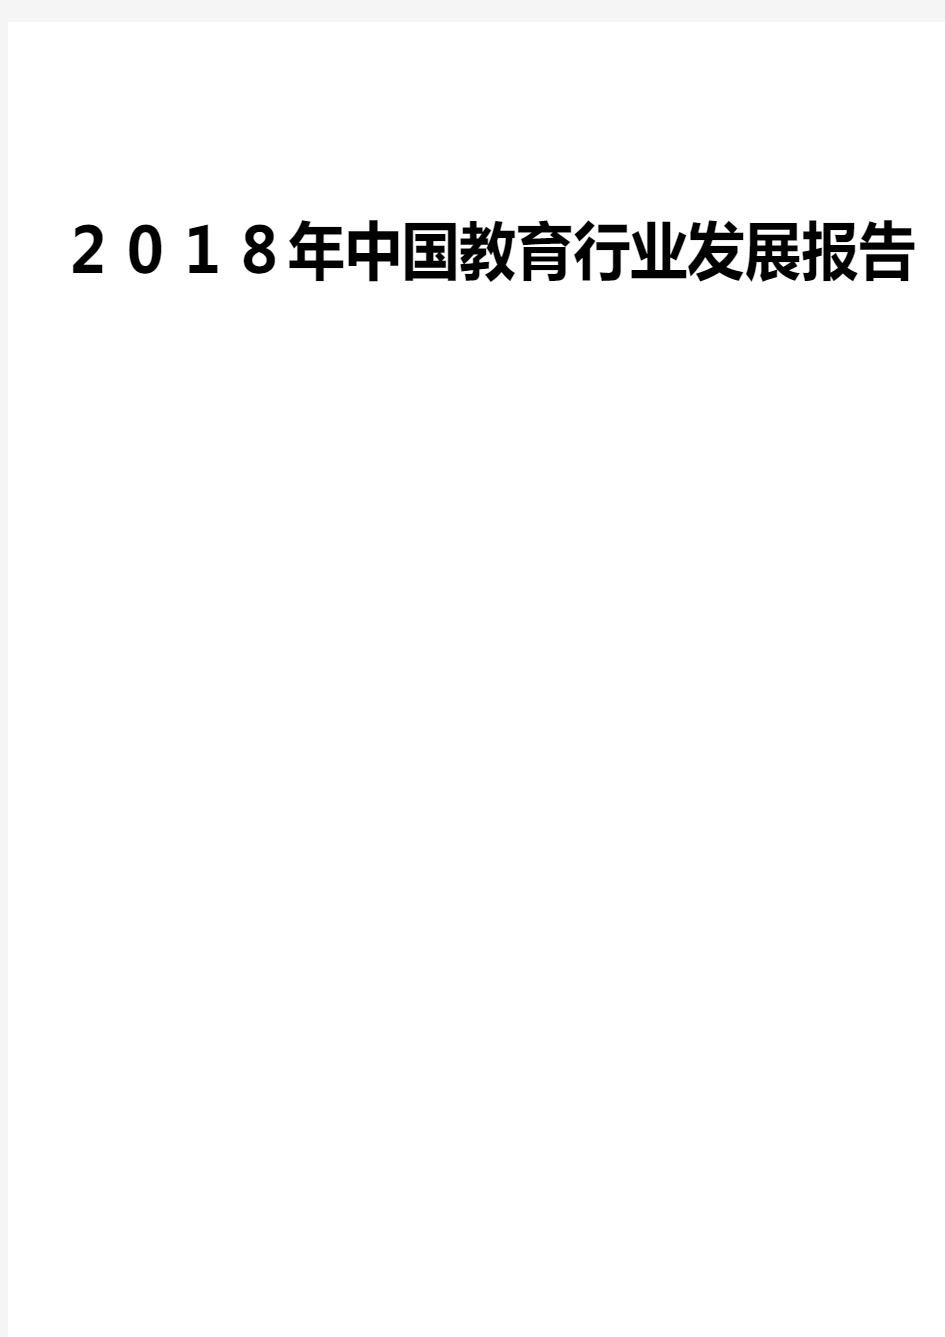 2018年中国教育行业发展报告